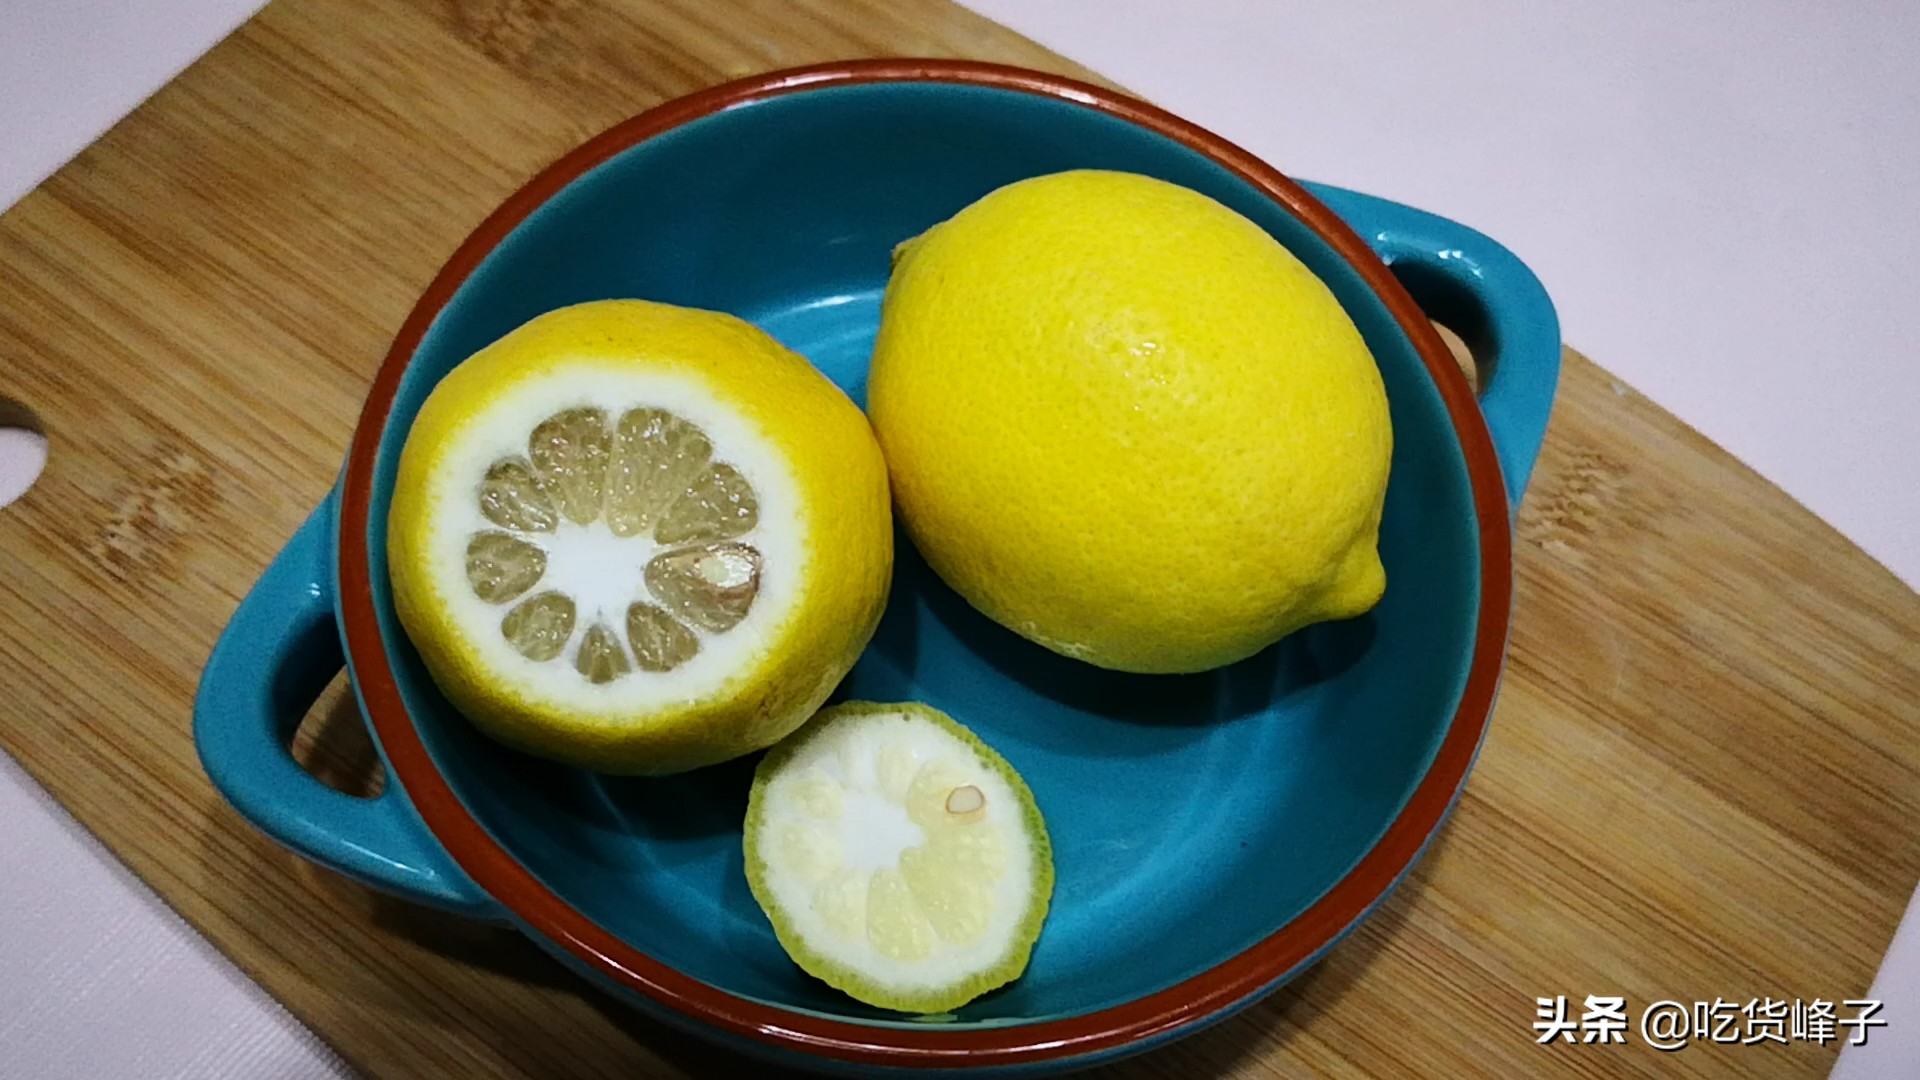 同样是柠檬，青柠檬和黄柠檬究竟有什么区别呢？可别再用错了